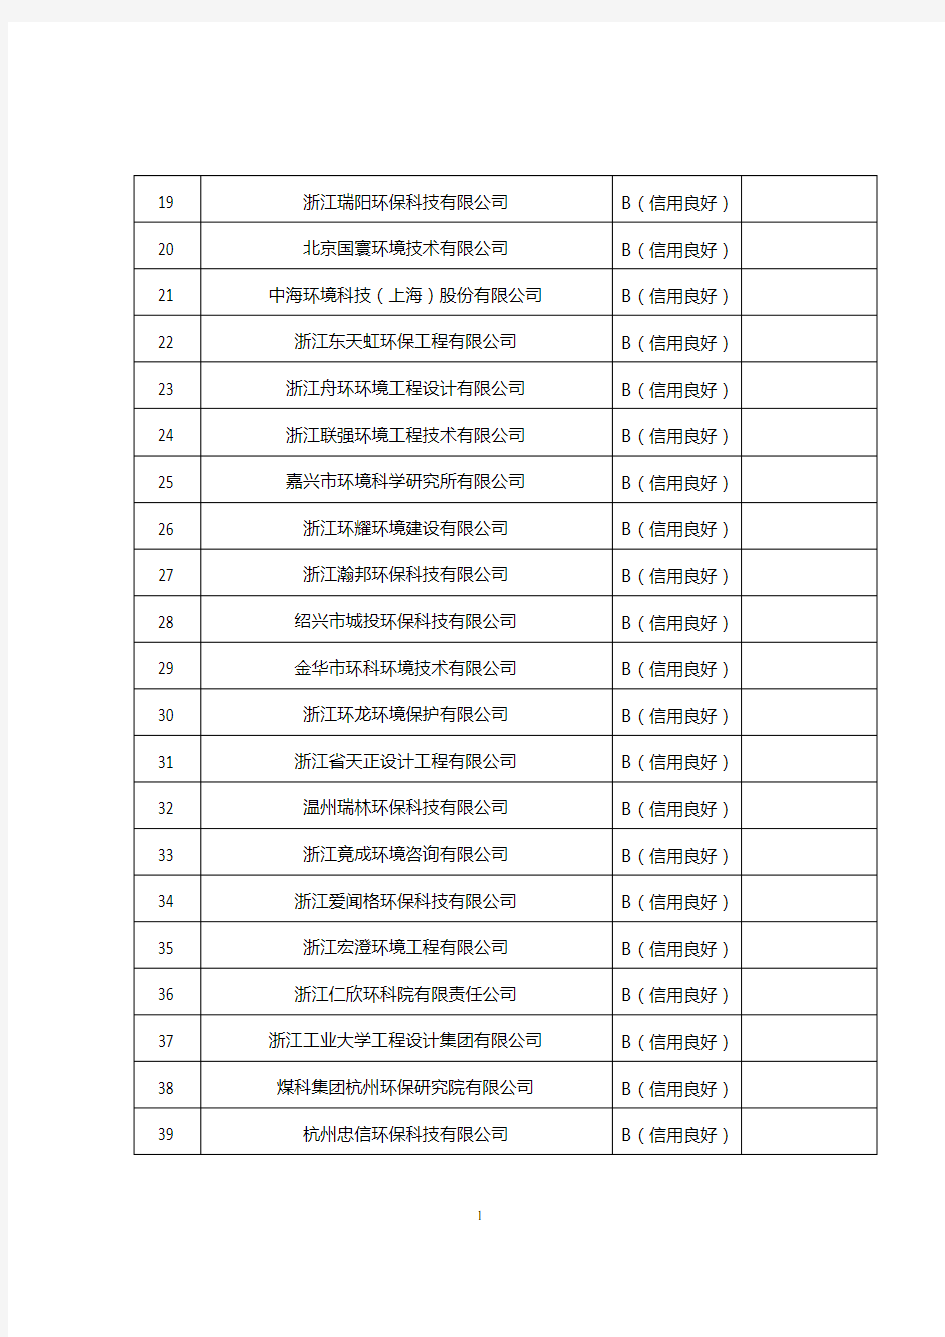 浙江省2018年度环境影响评价机构信用等级评定结果